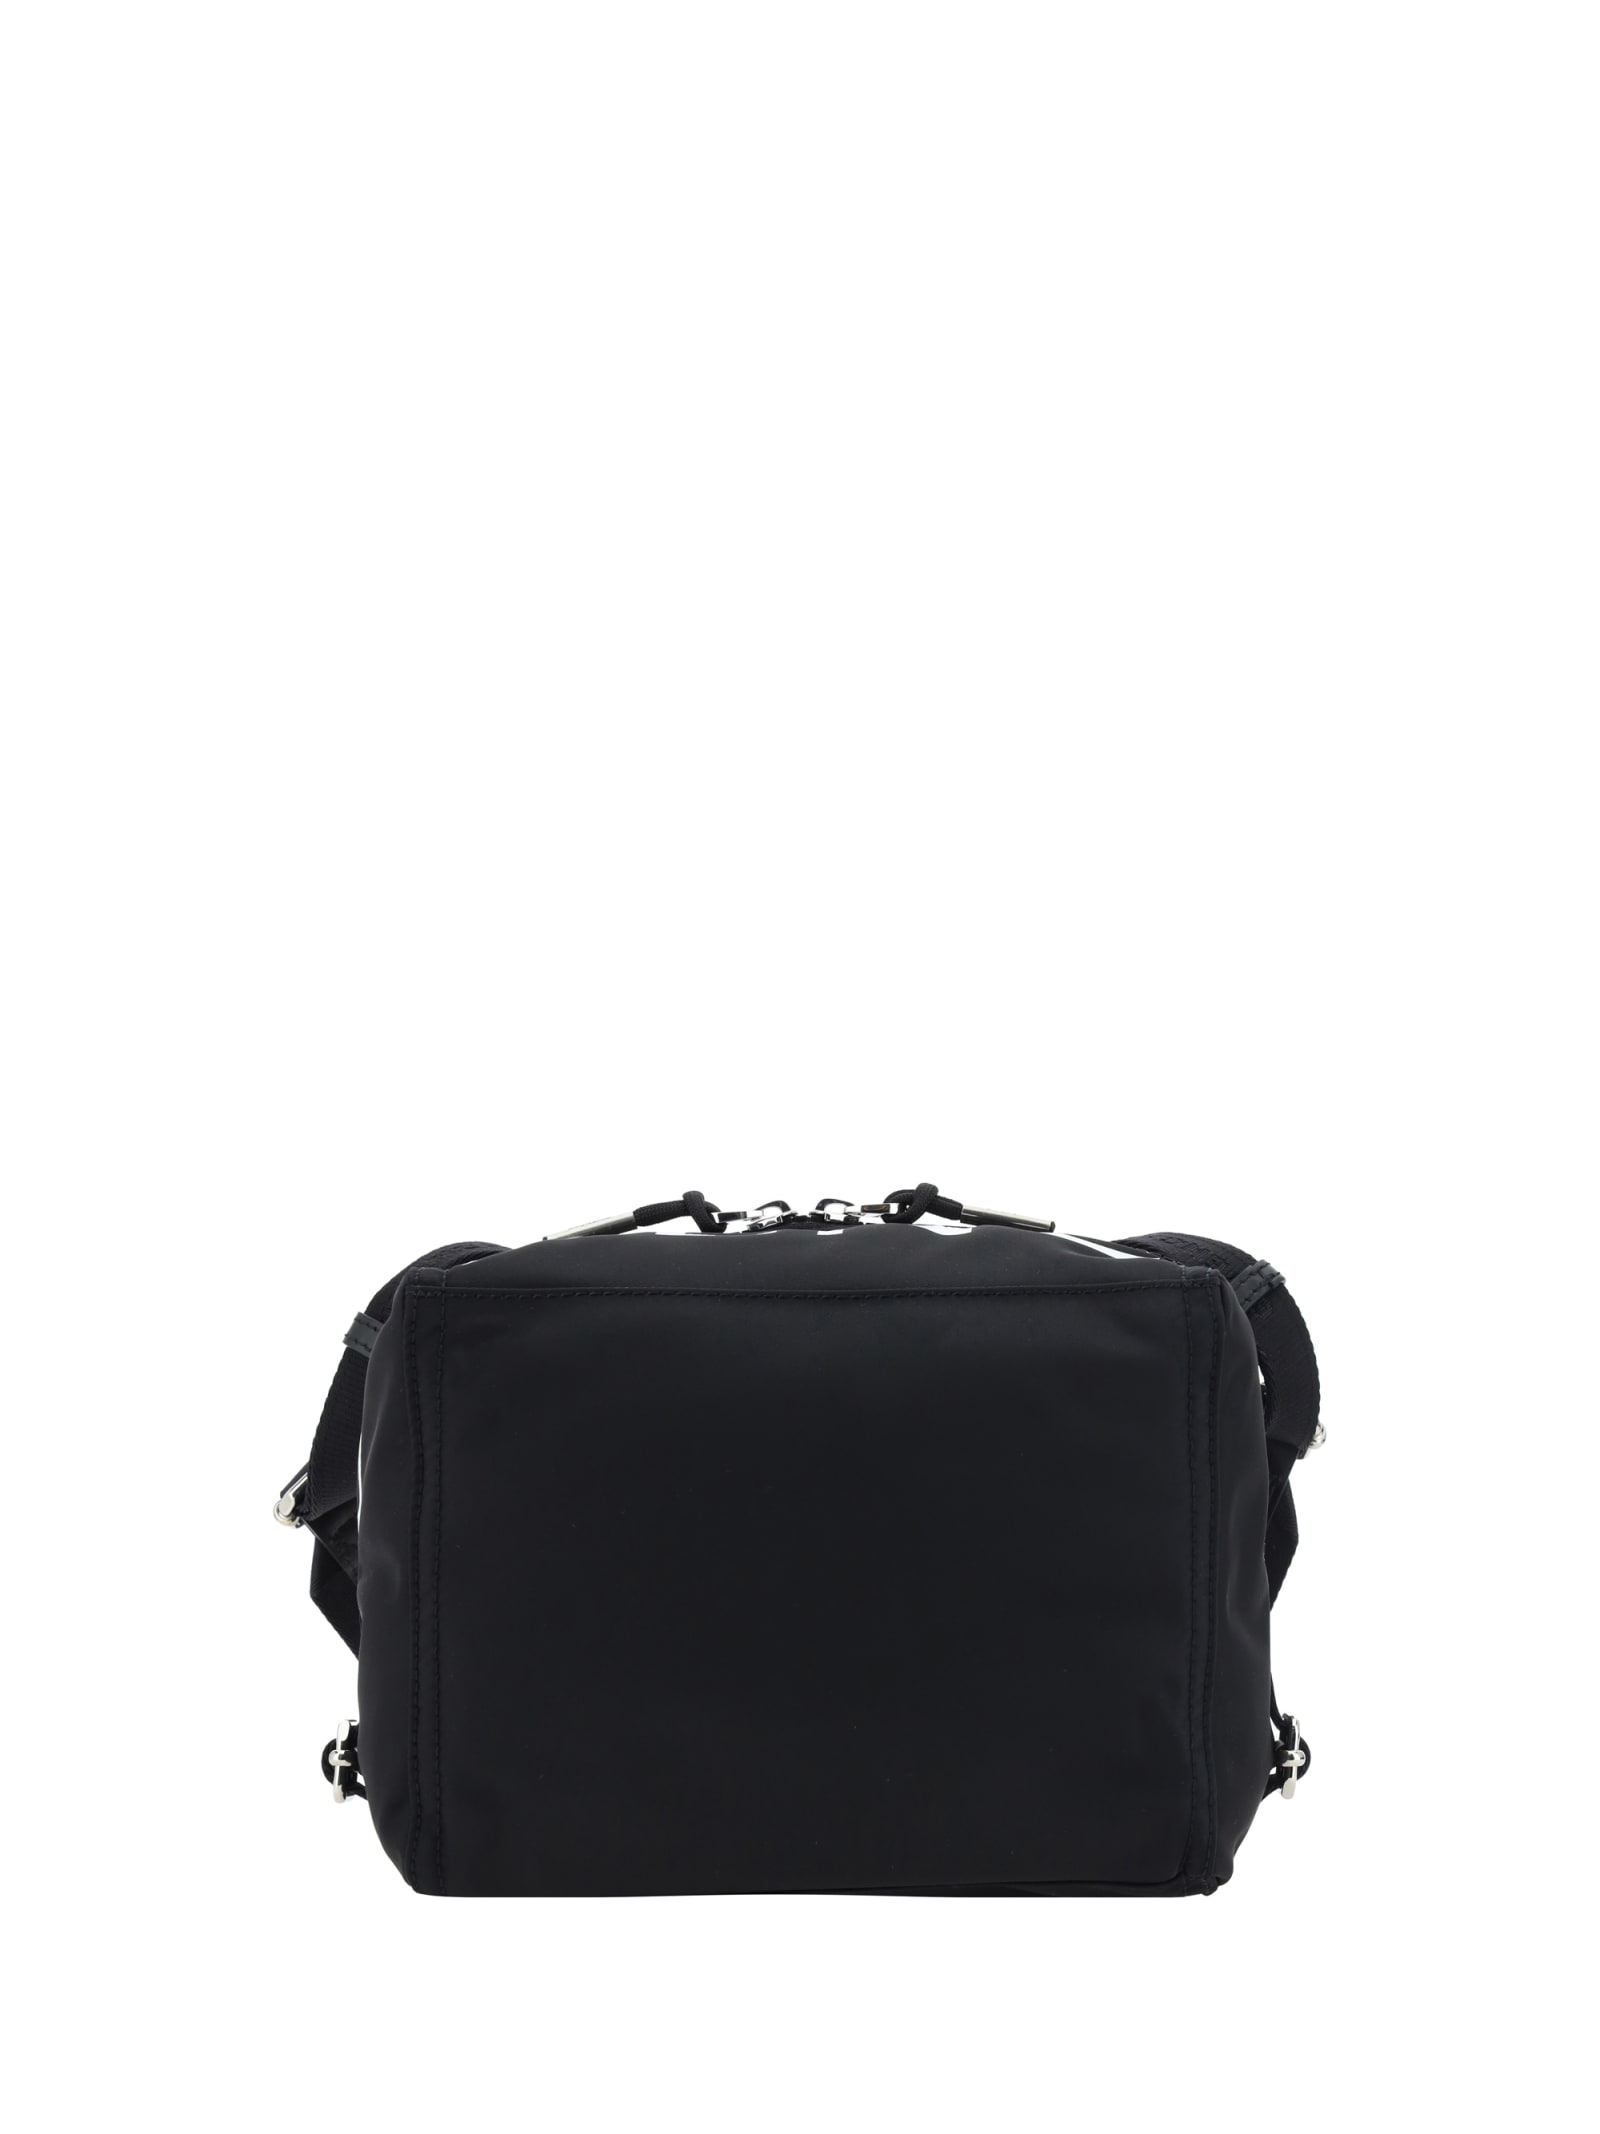 Givenchy Pandora Shoulder Bag In Black White